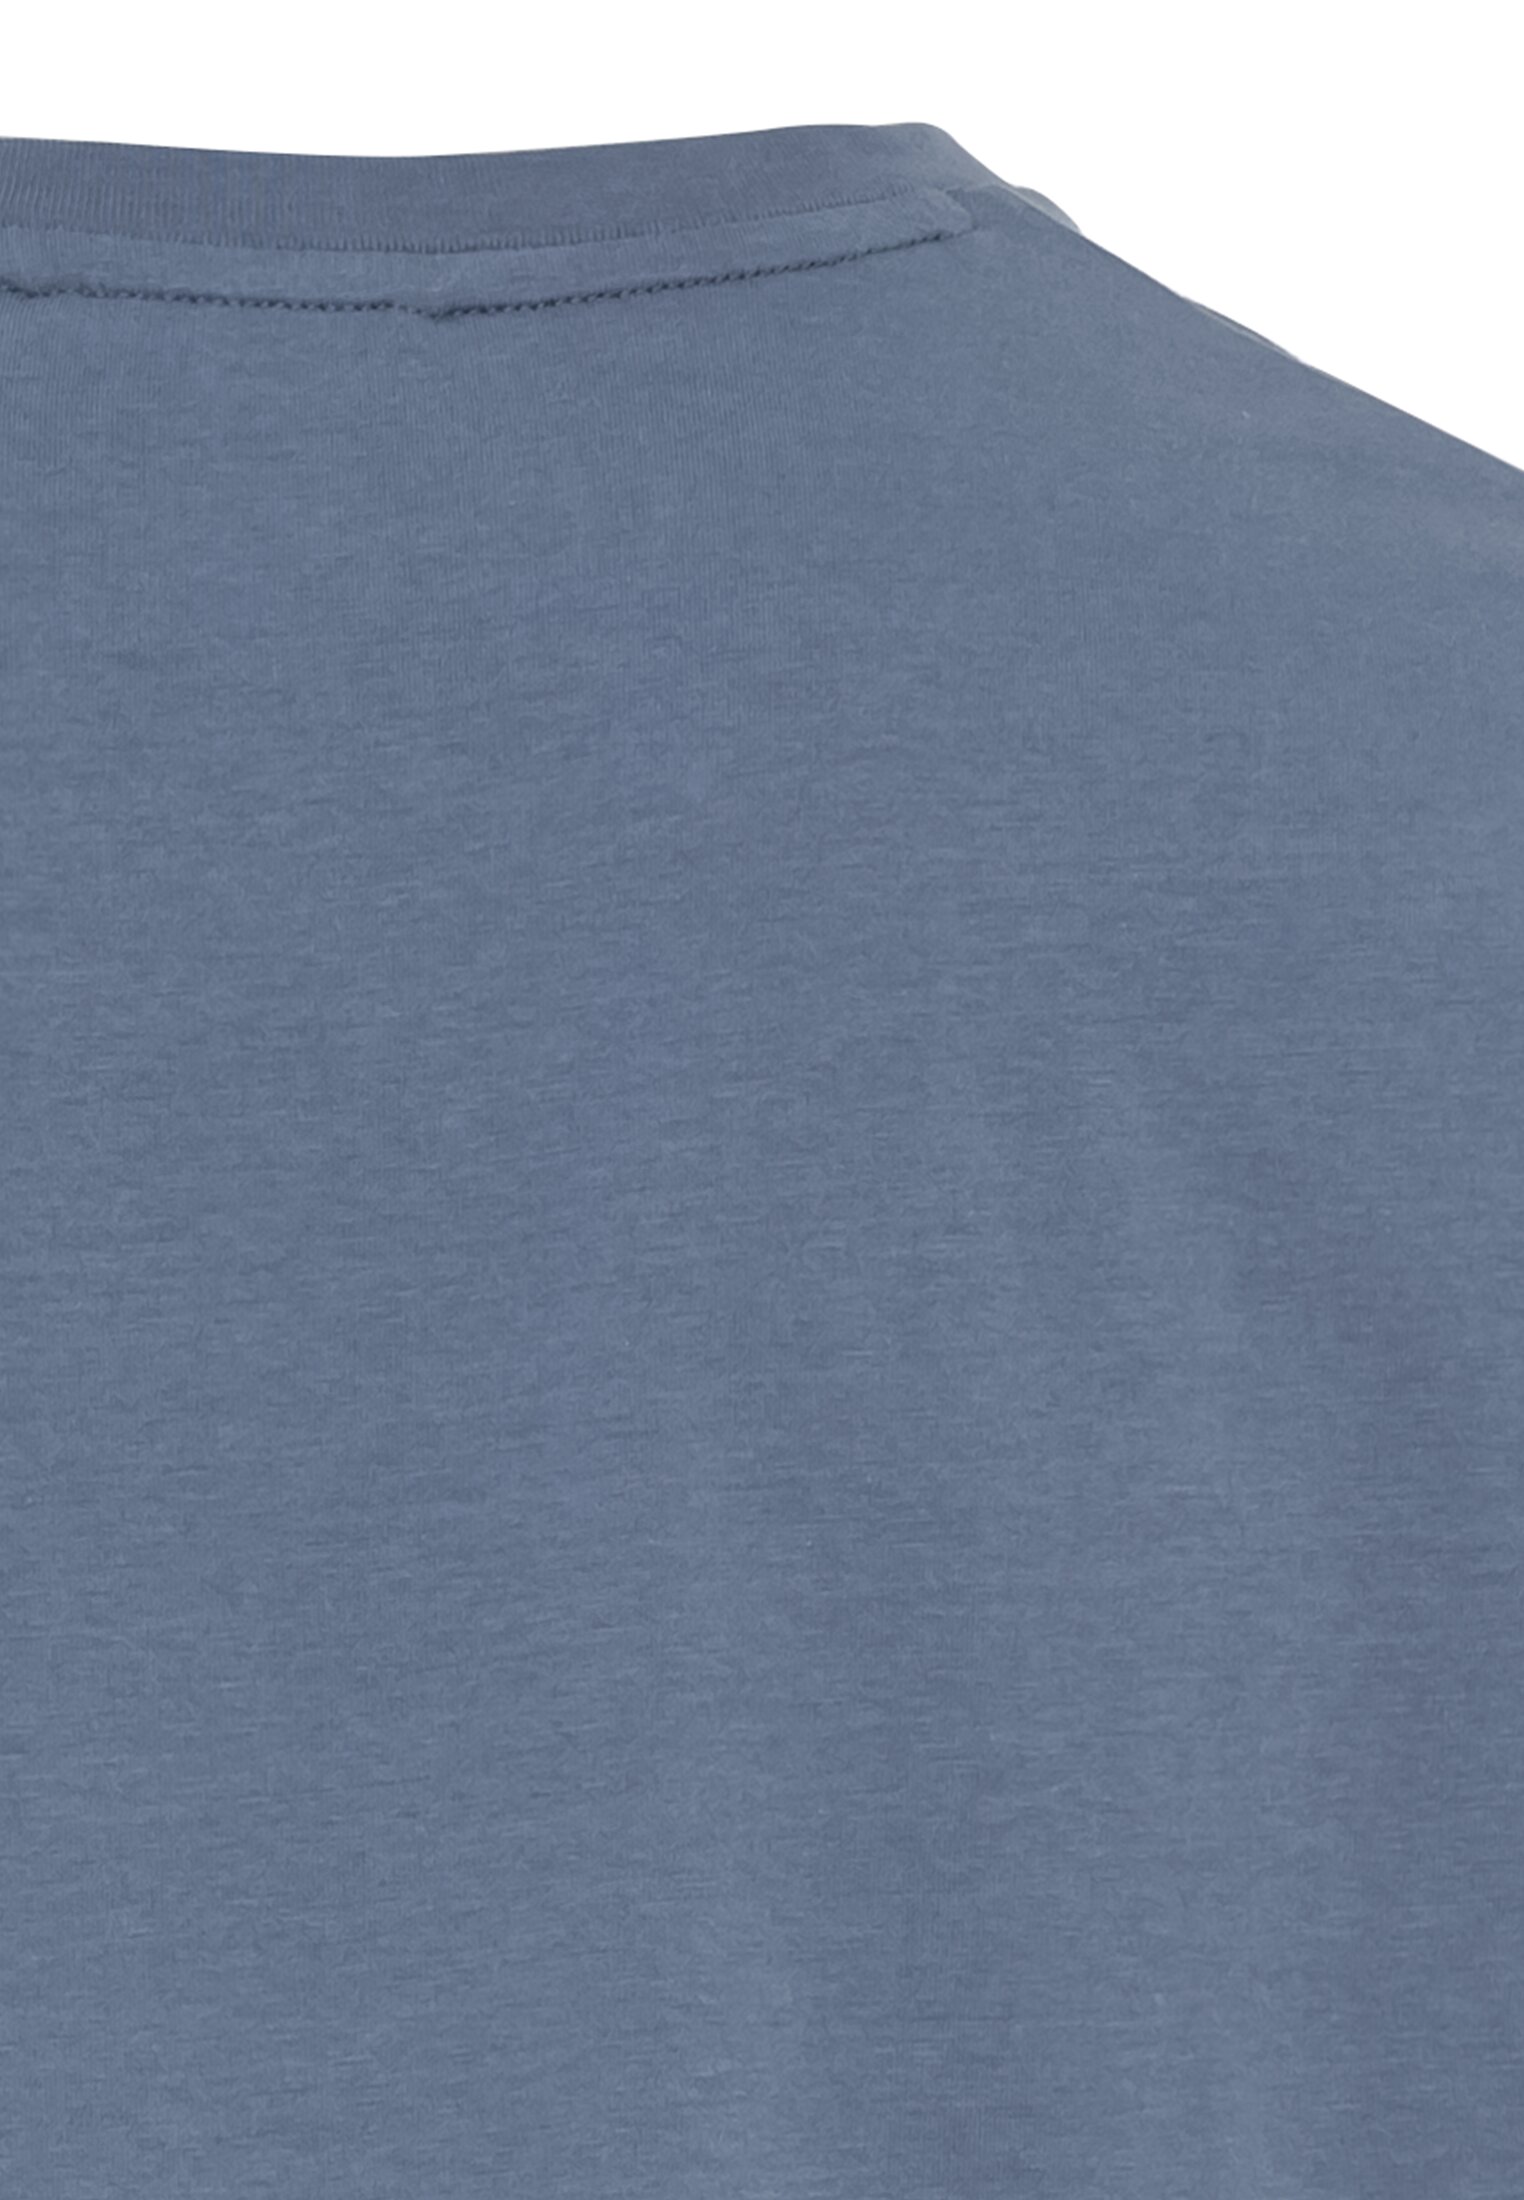 Мужская футболка Camel Active, голубая, цвет голубой, размер 58 - фото 4